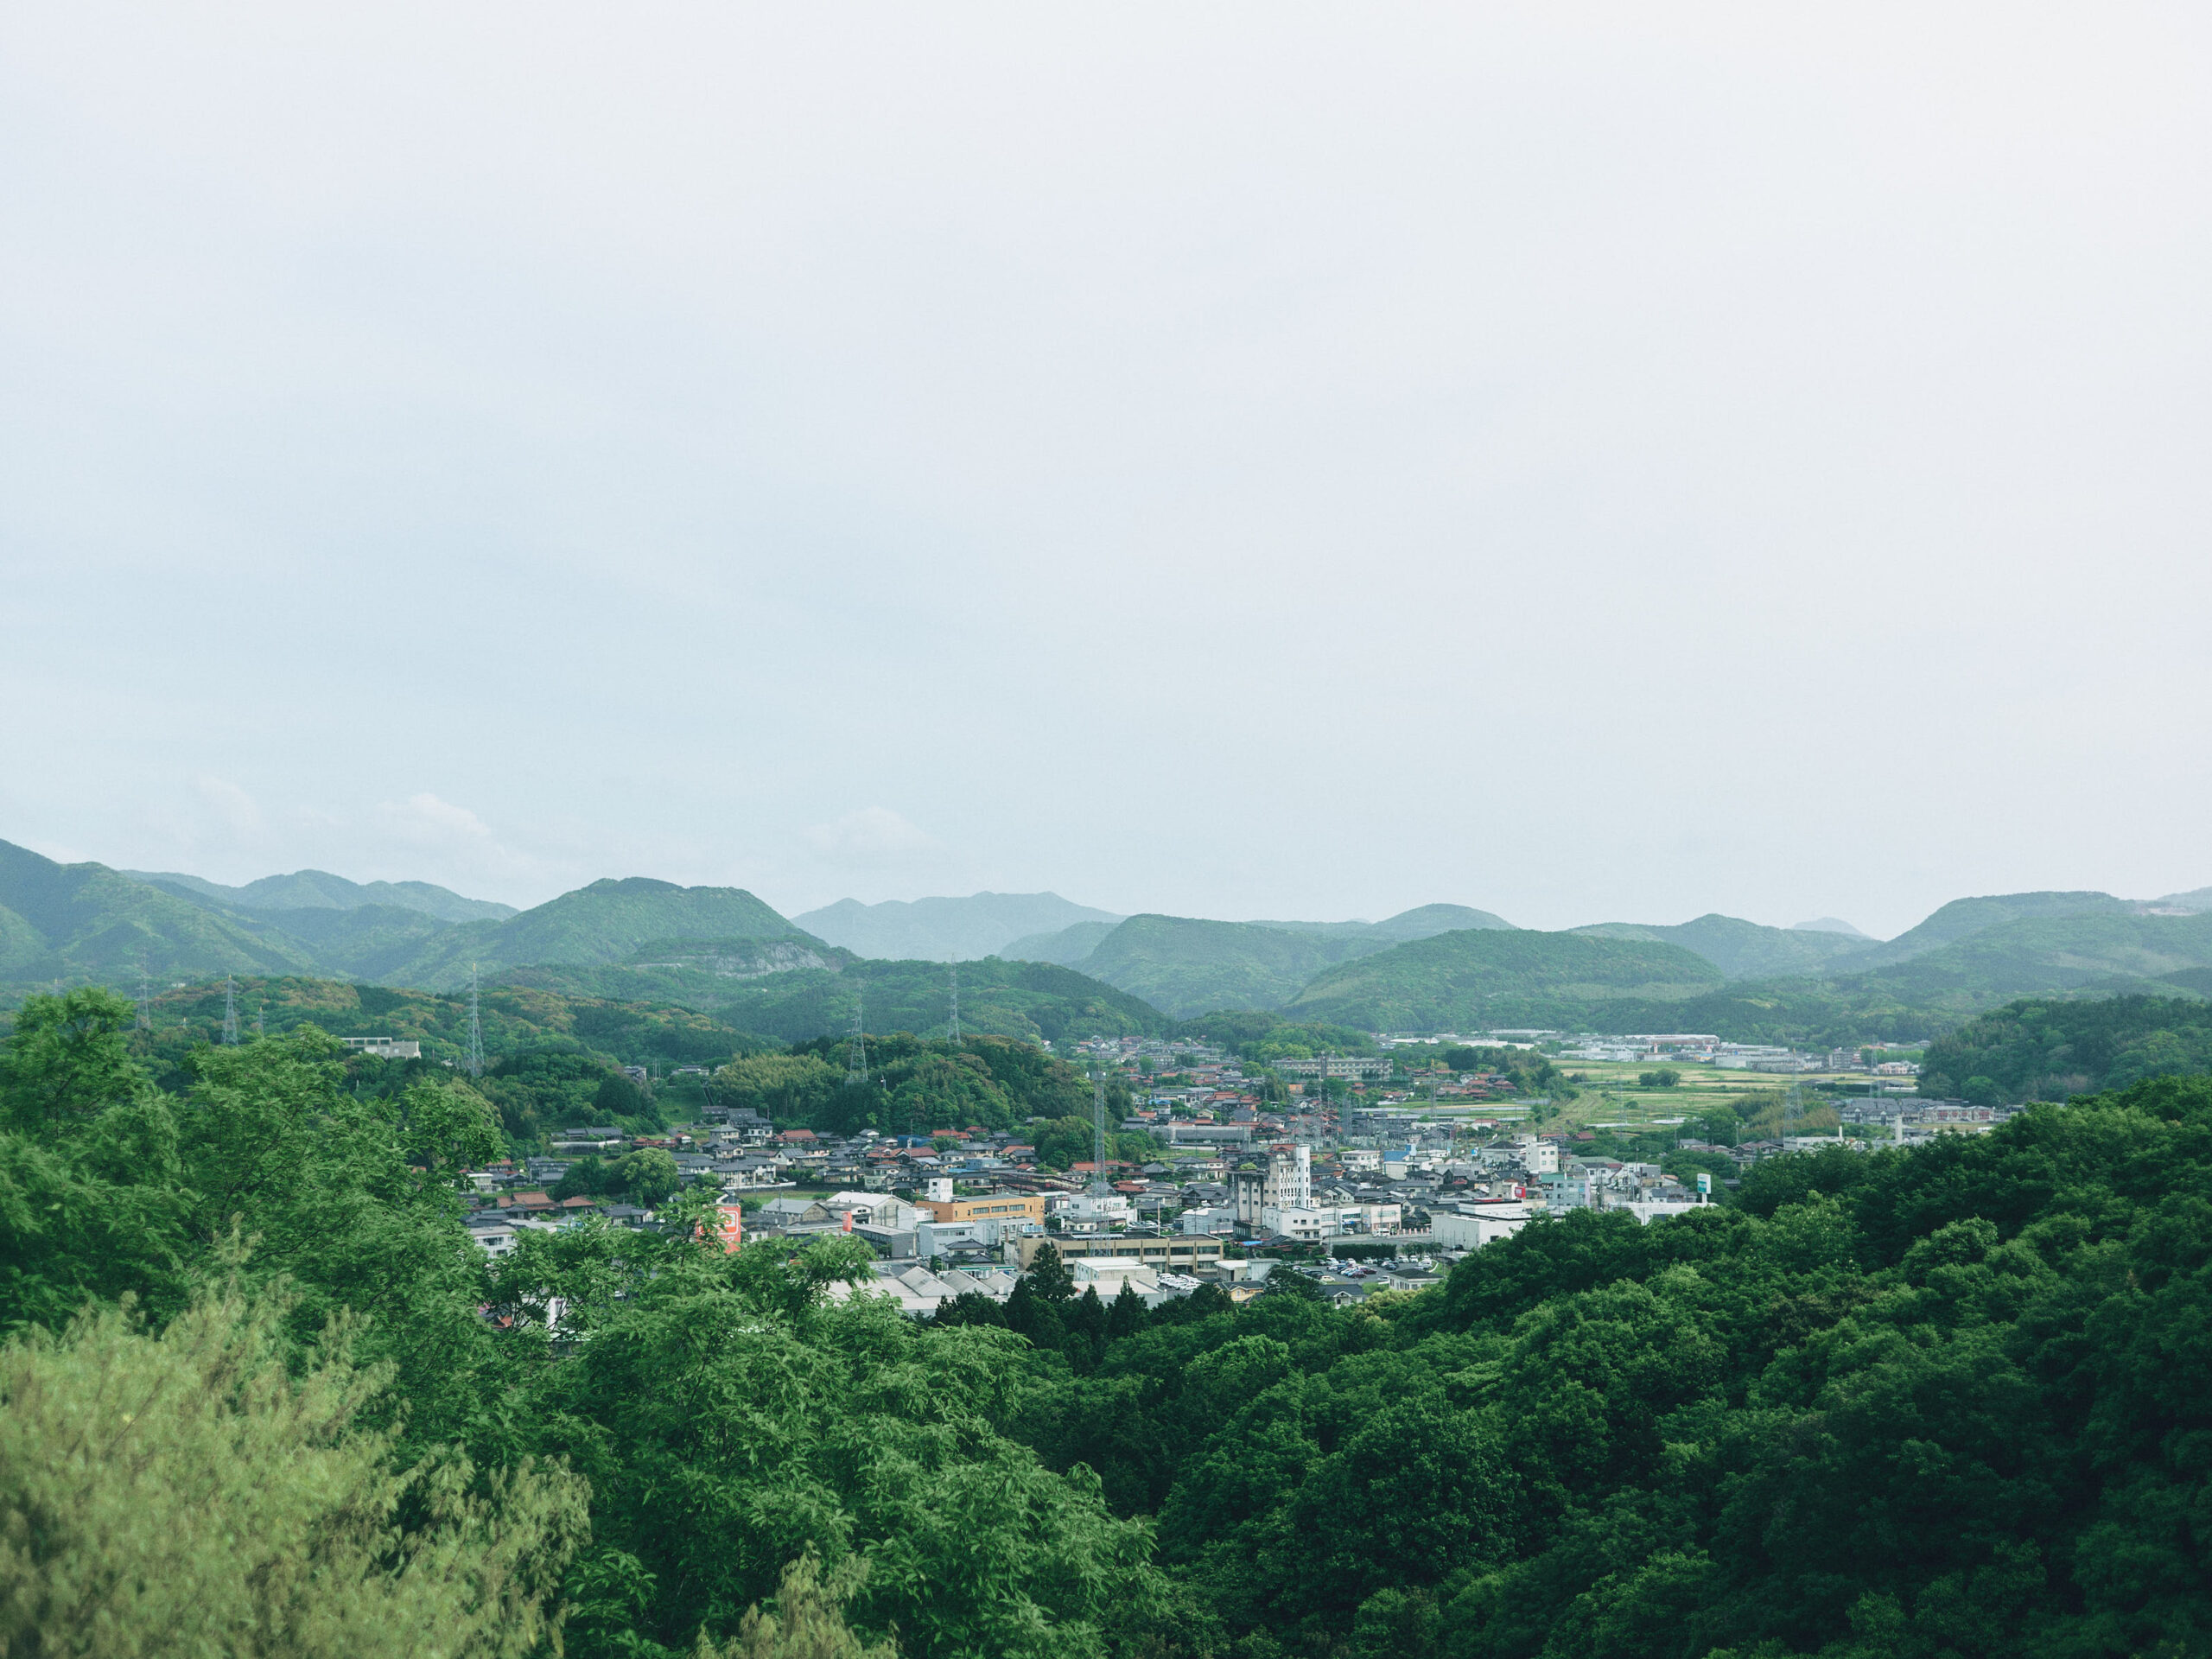 山陽小野田市へ向かっていく山道から、美祢市街地を一望できた。